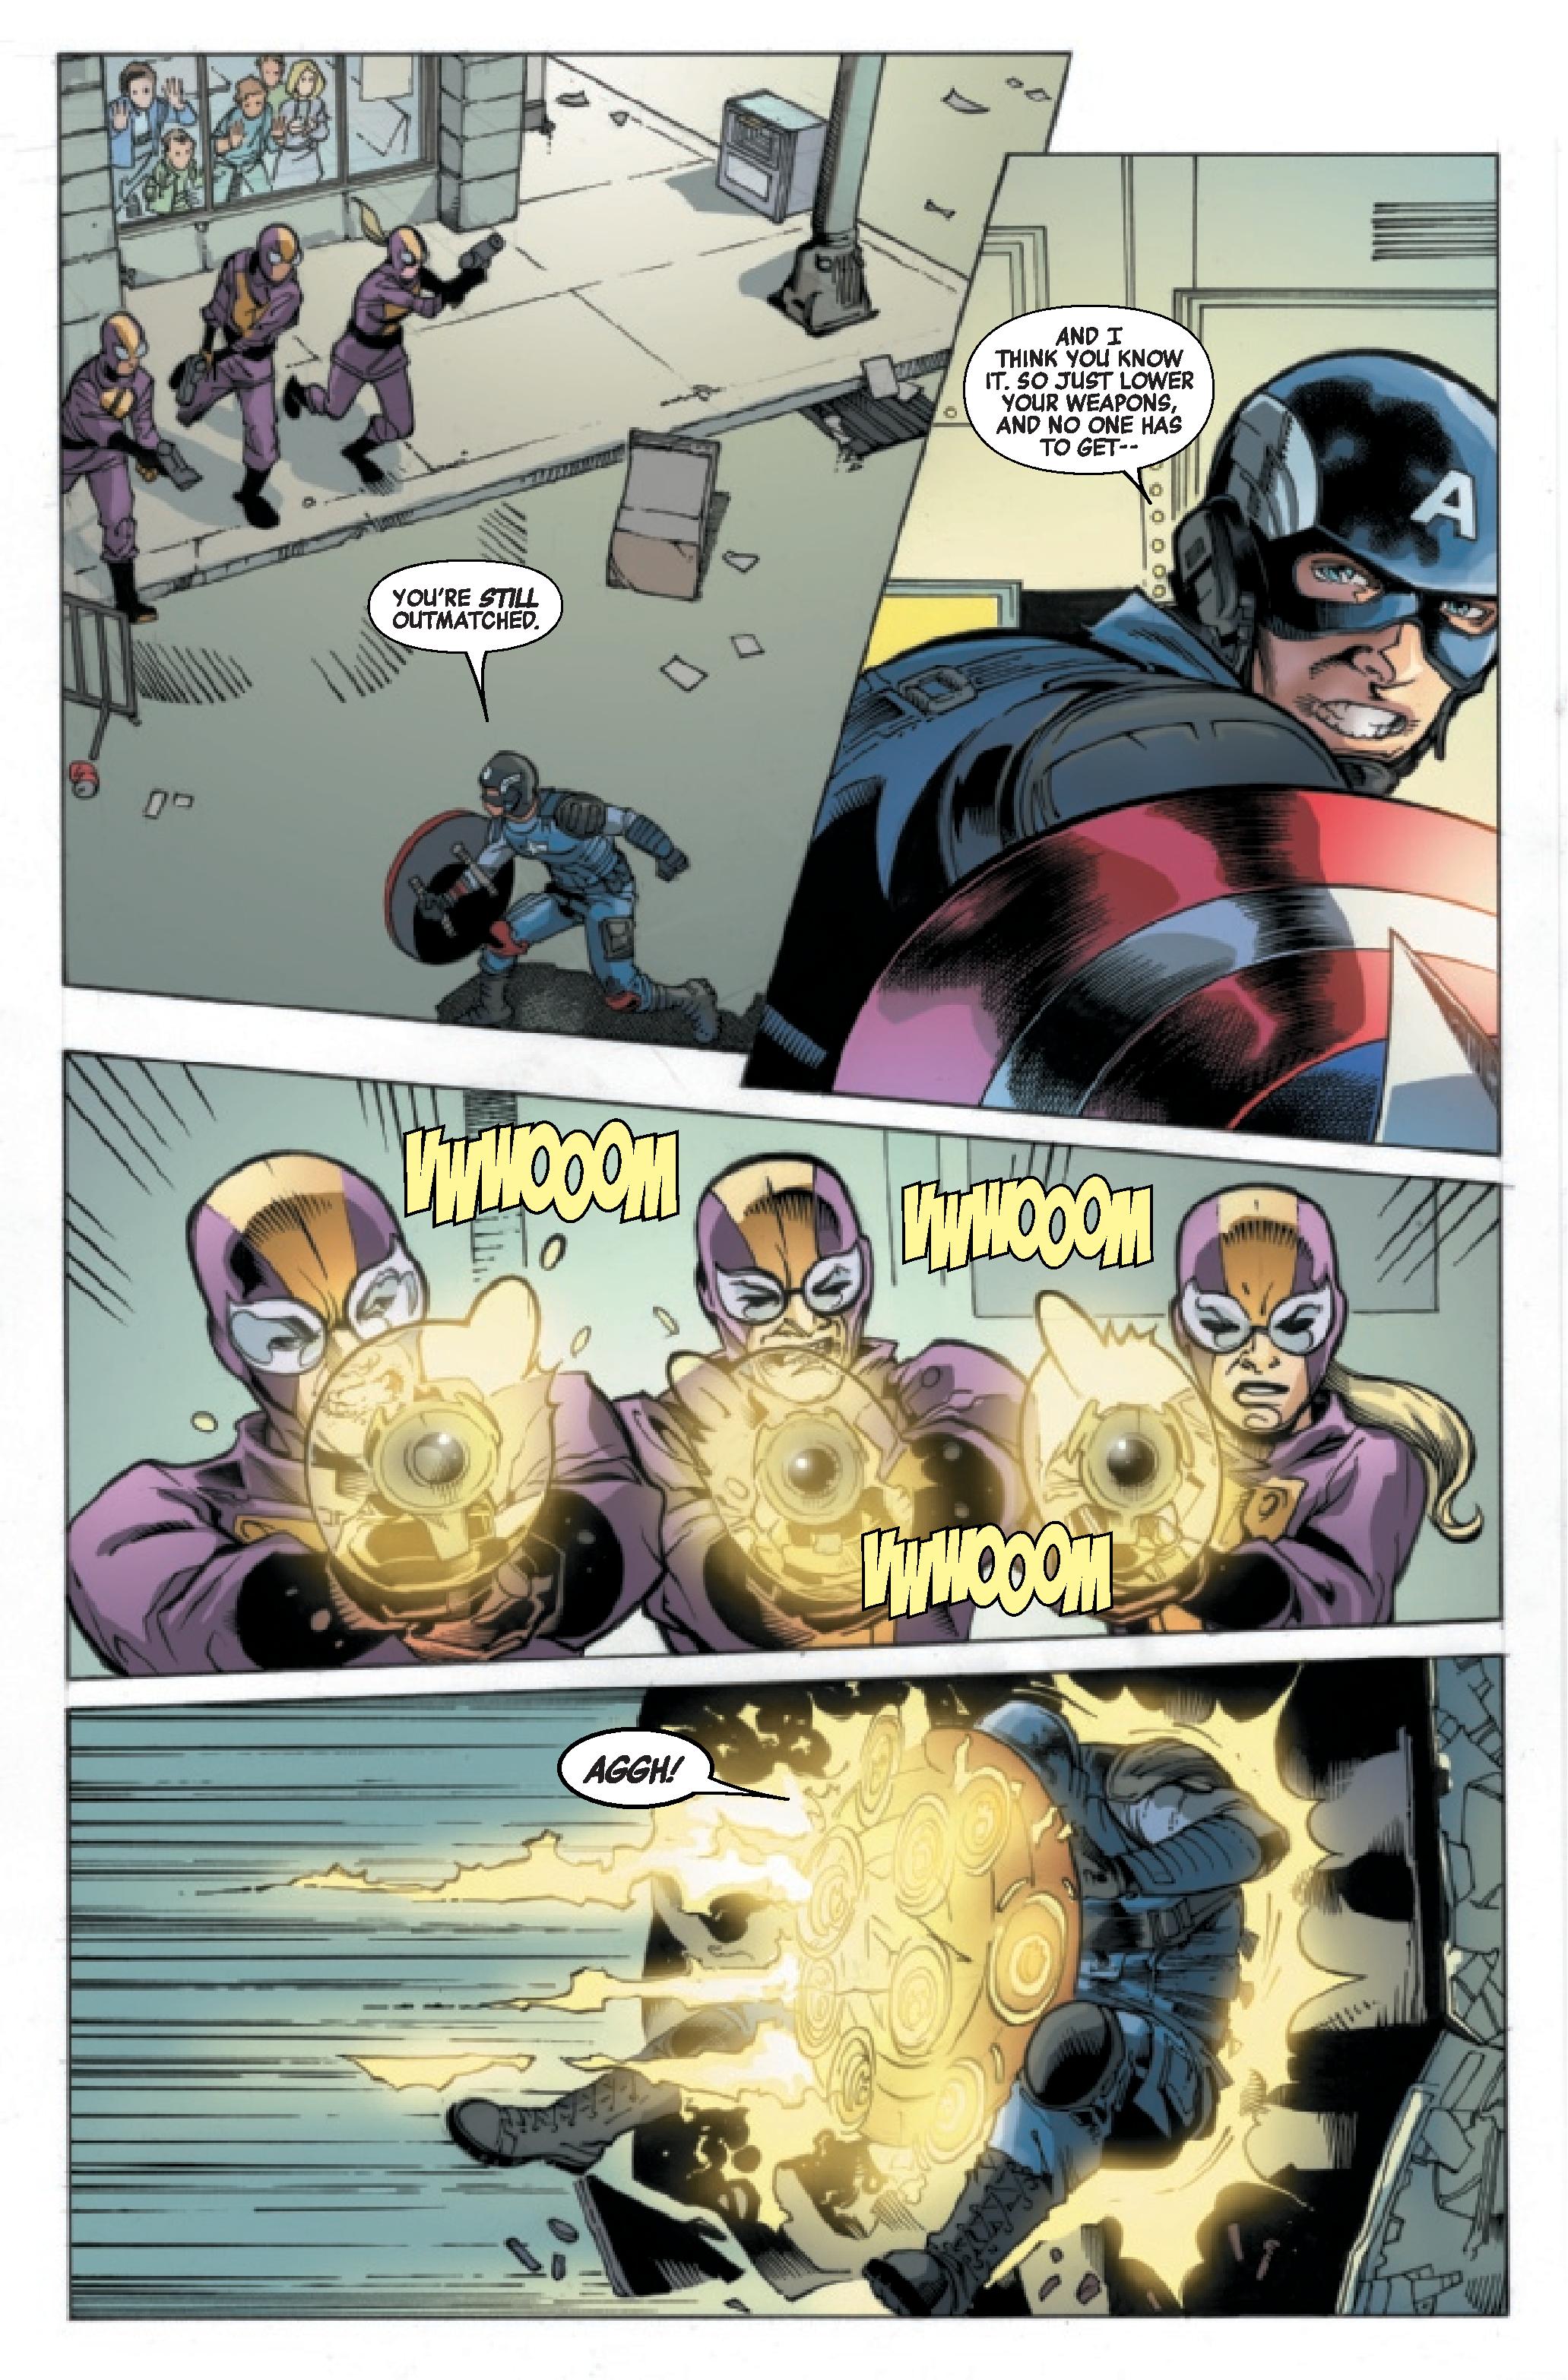 Marvels Avengers Captain America #1